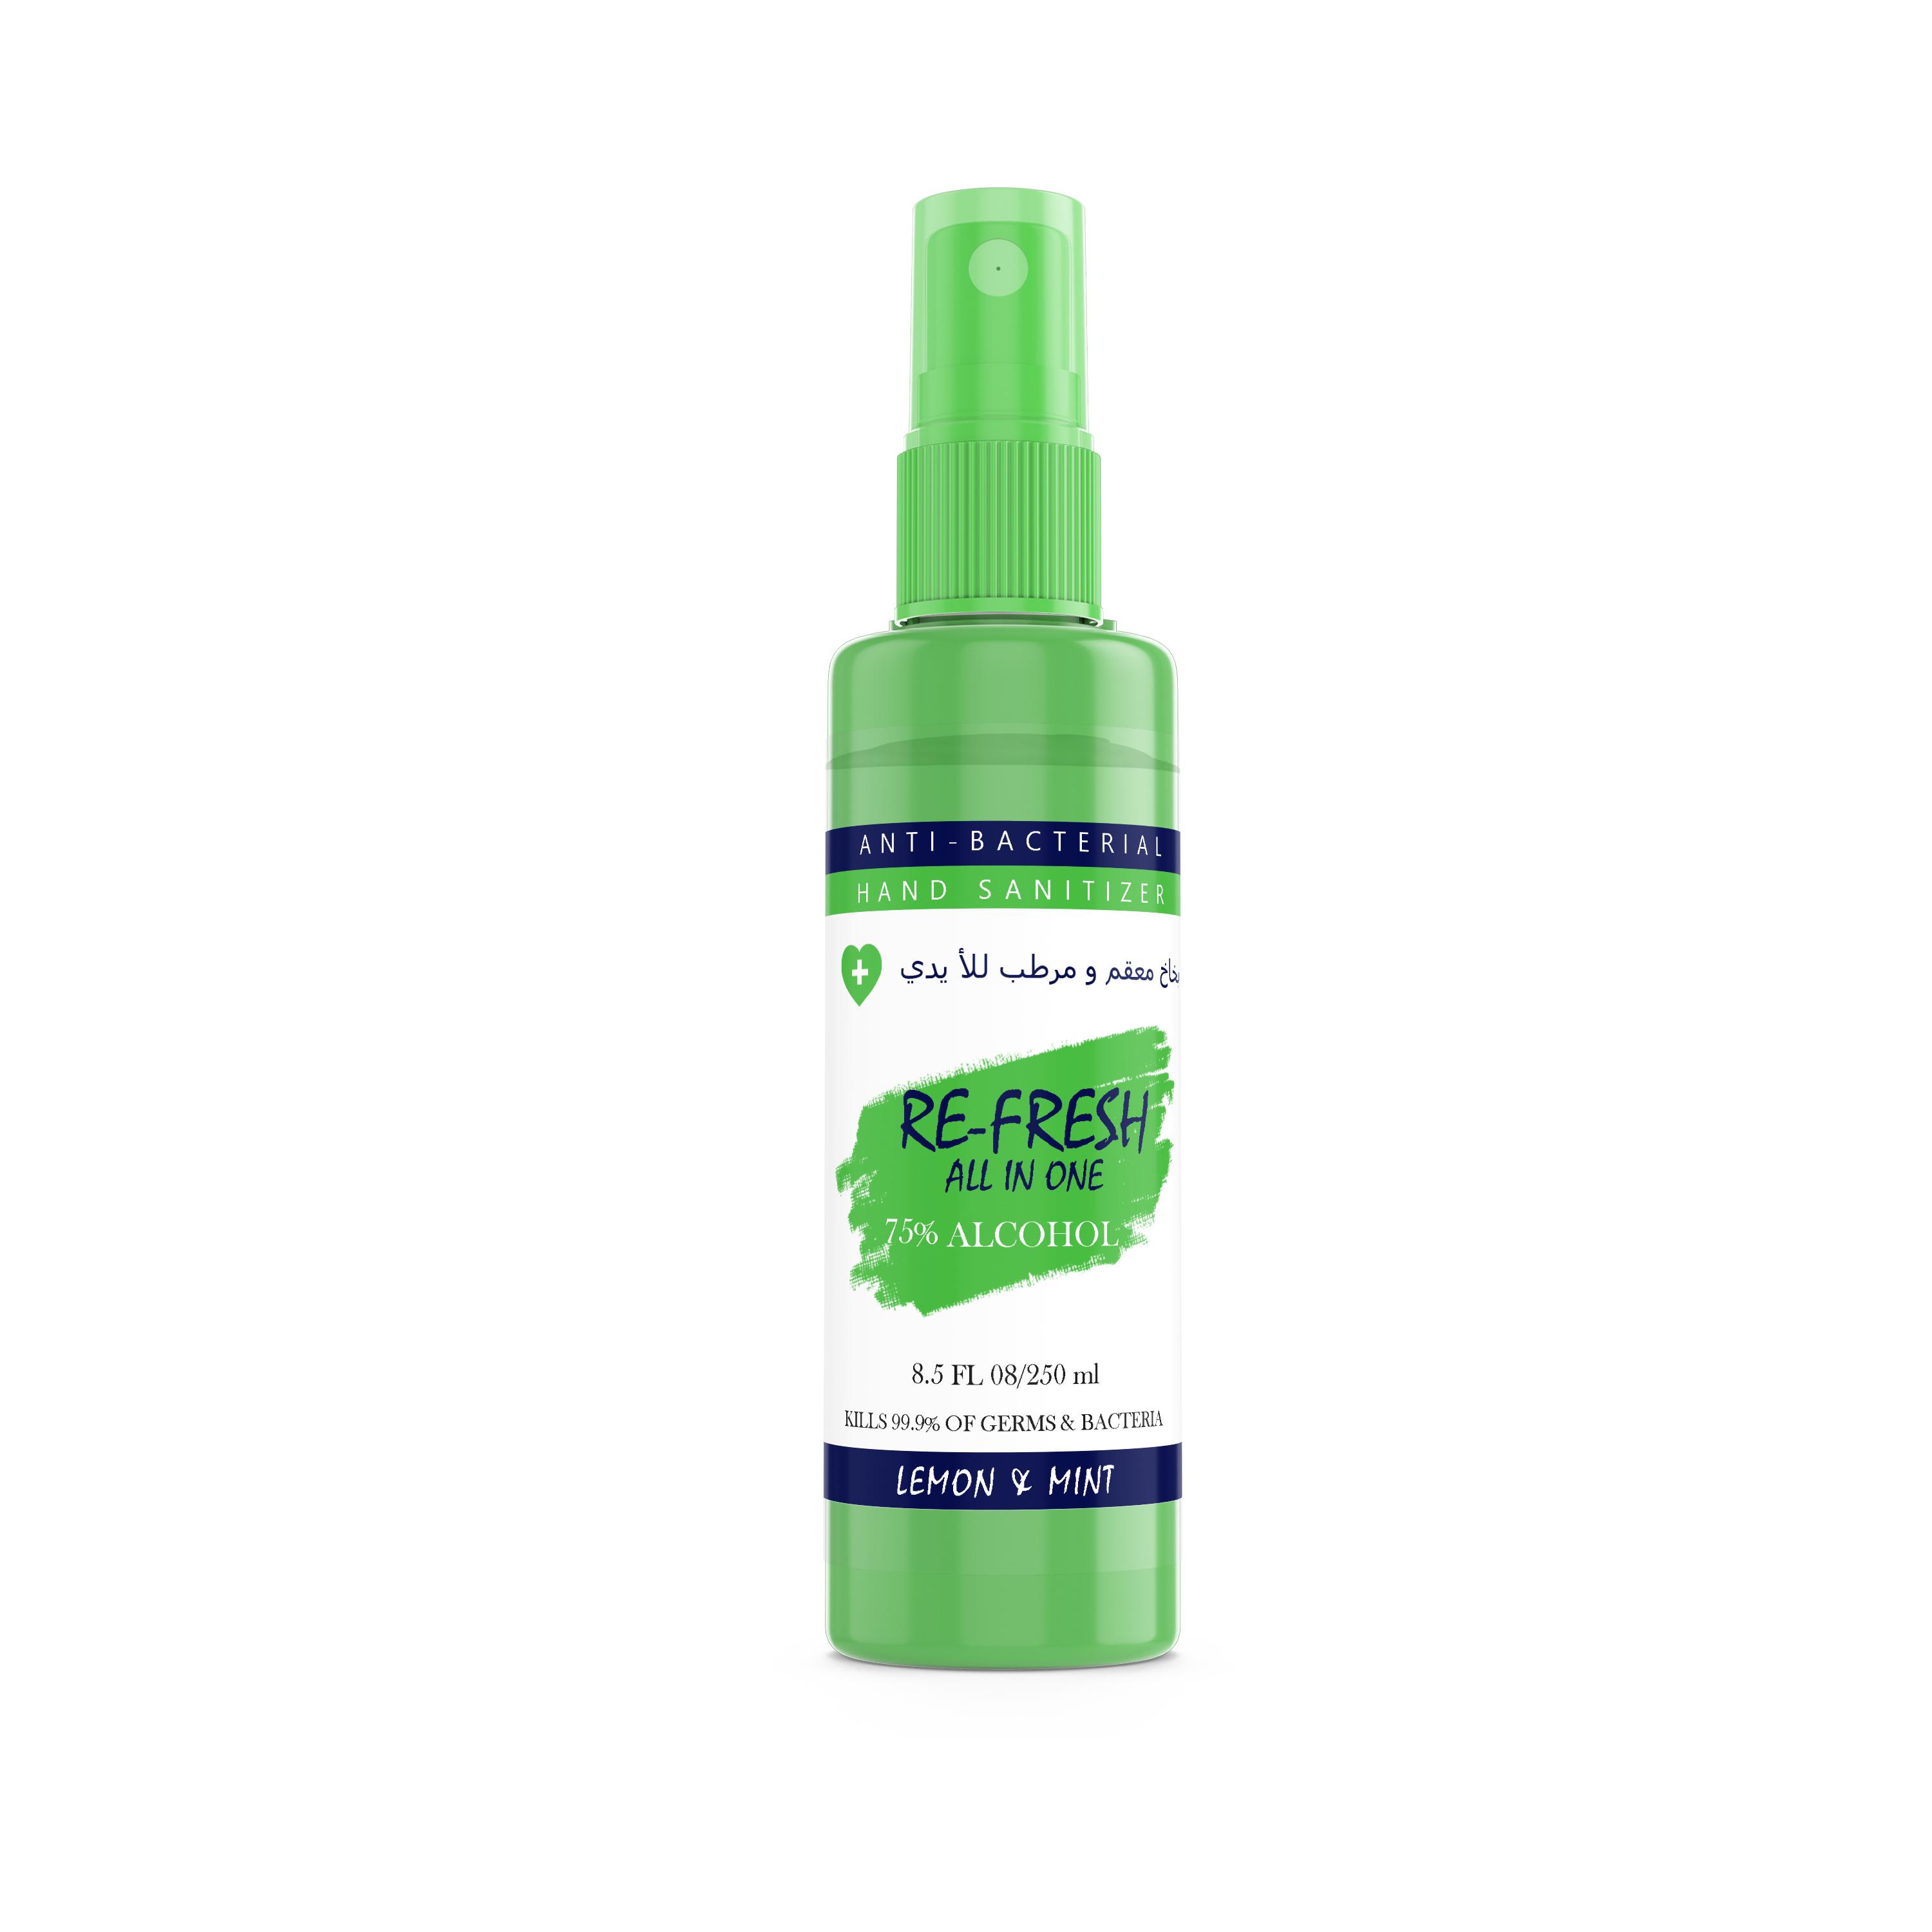 Hand Sanitizer Re-Fresh All in one Spray Lemon & Mint Green 250 ml